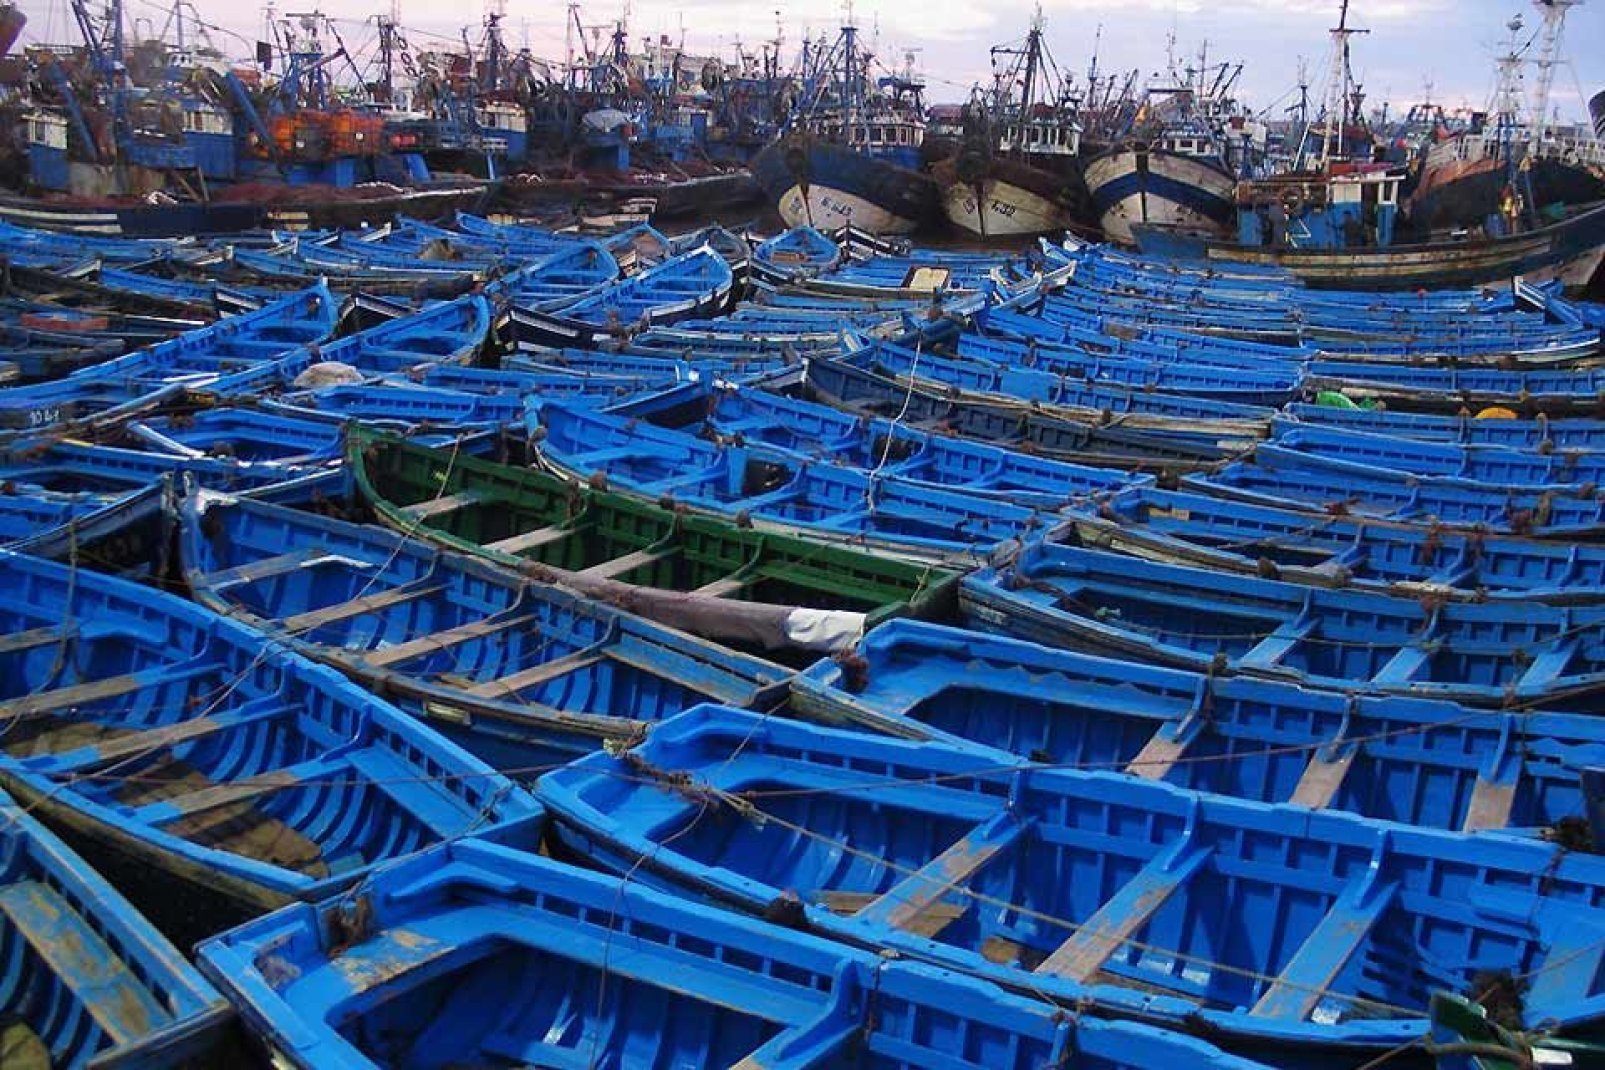 Le port de pêche traditionnelle est de tout bleu vêtu car cela aurait pour effet de tromper les sardines